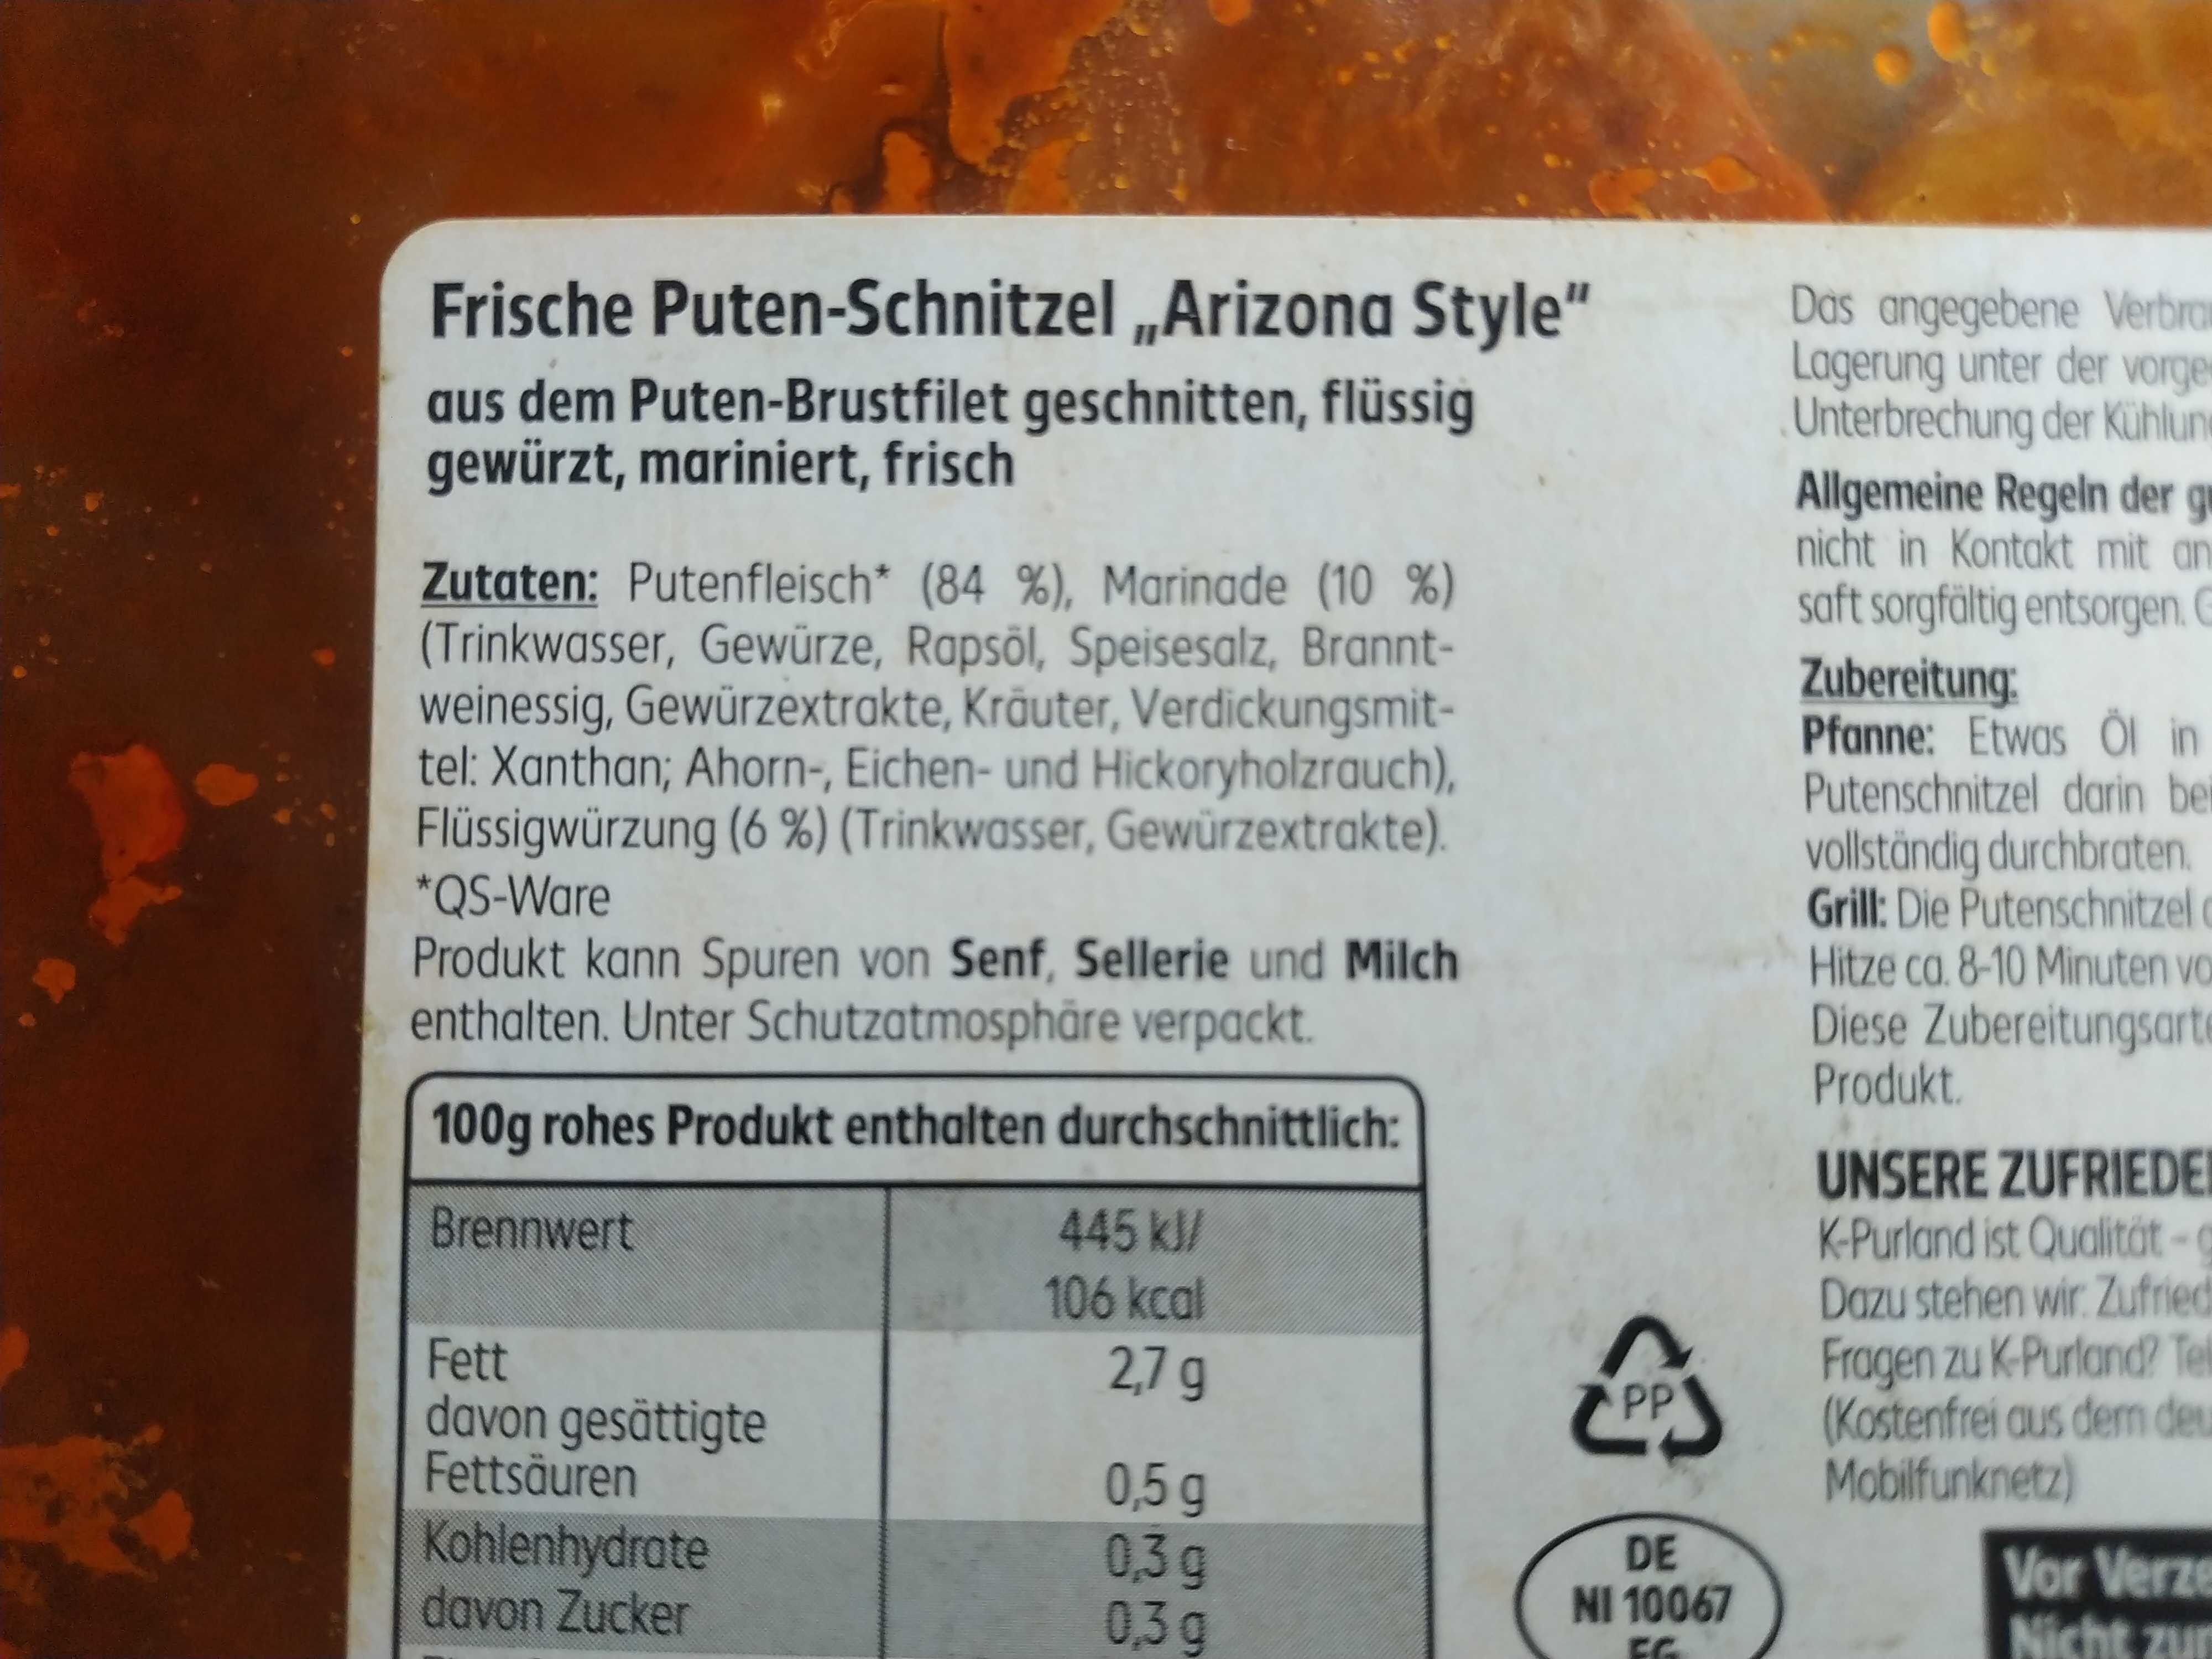 Puten-Schnitzel "Arizona Style" - Ingredients